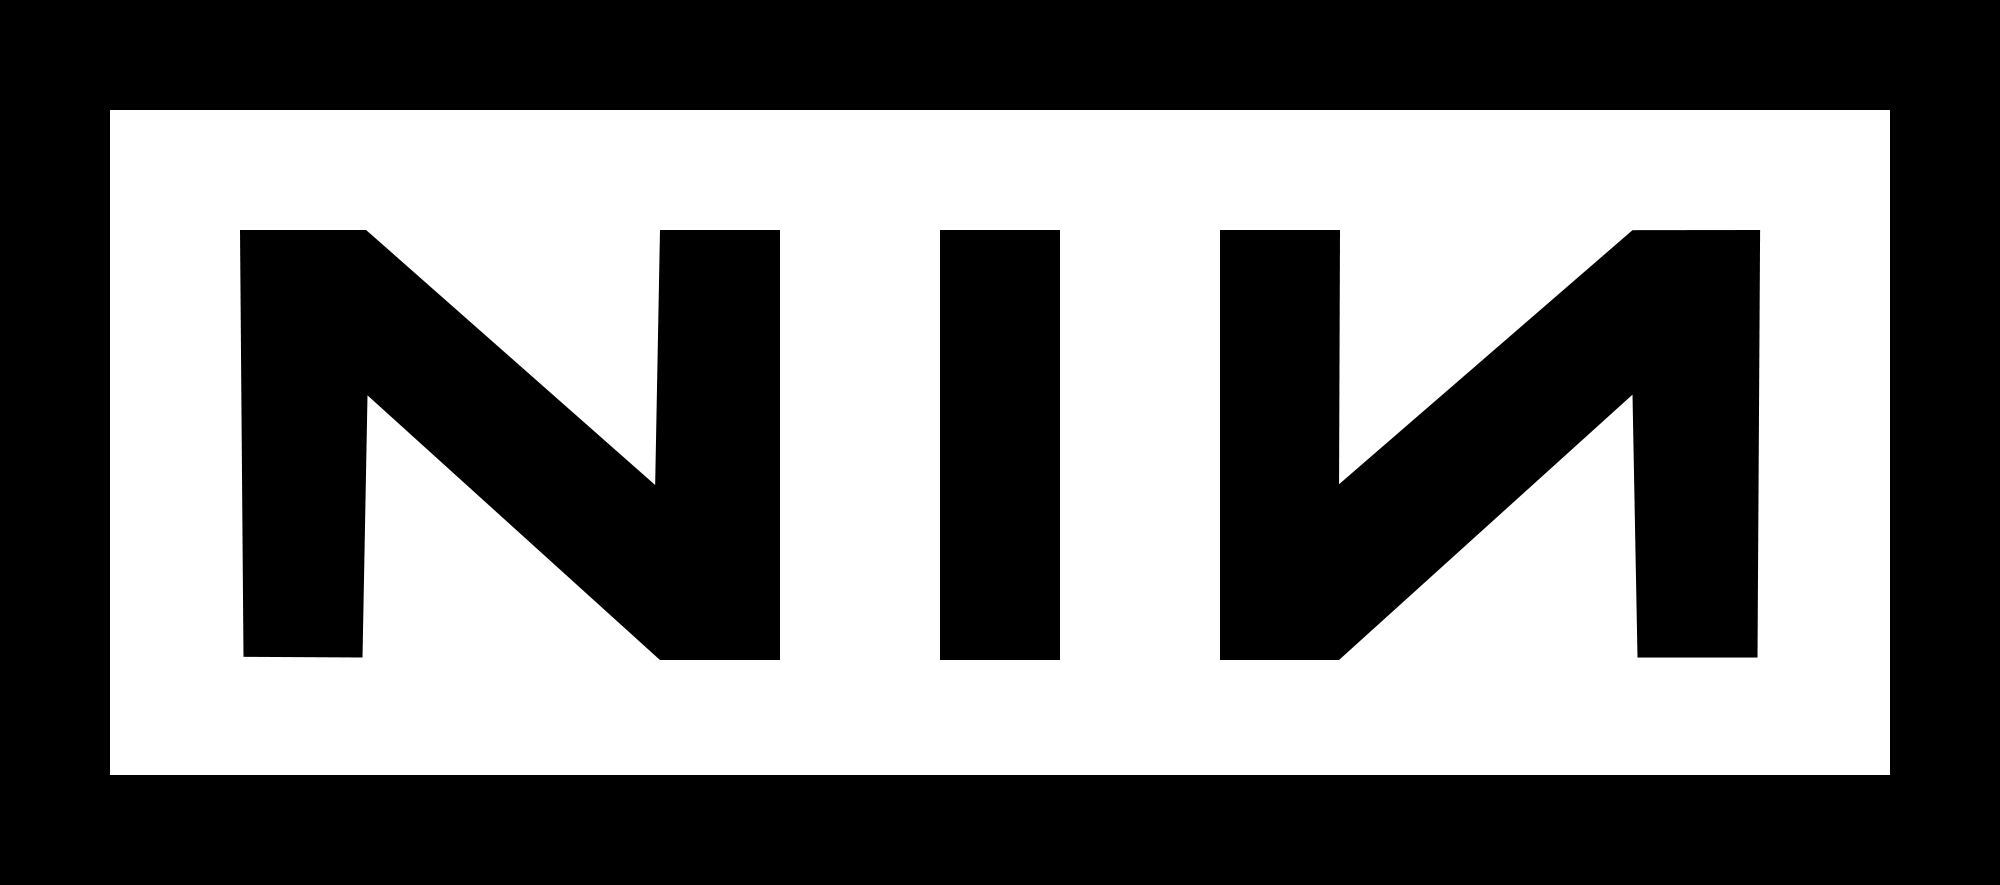 Nine Inch Nails Logo - Nine Inch Nails logo.svg